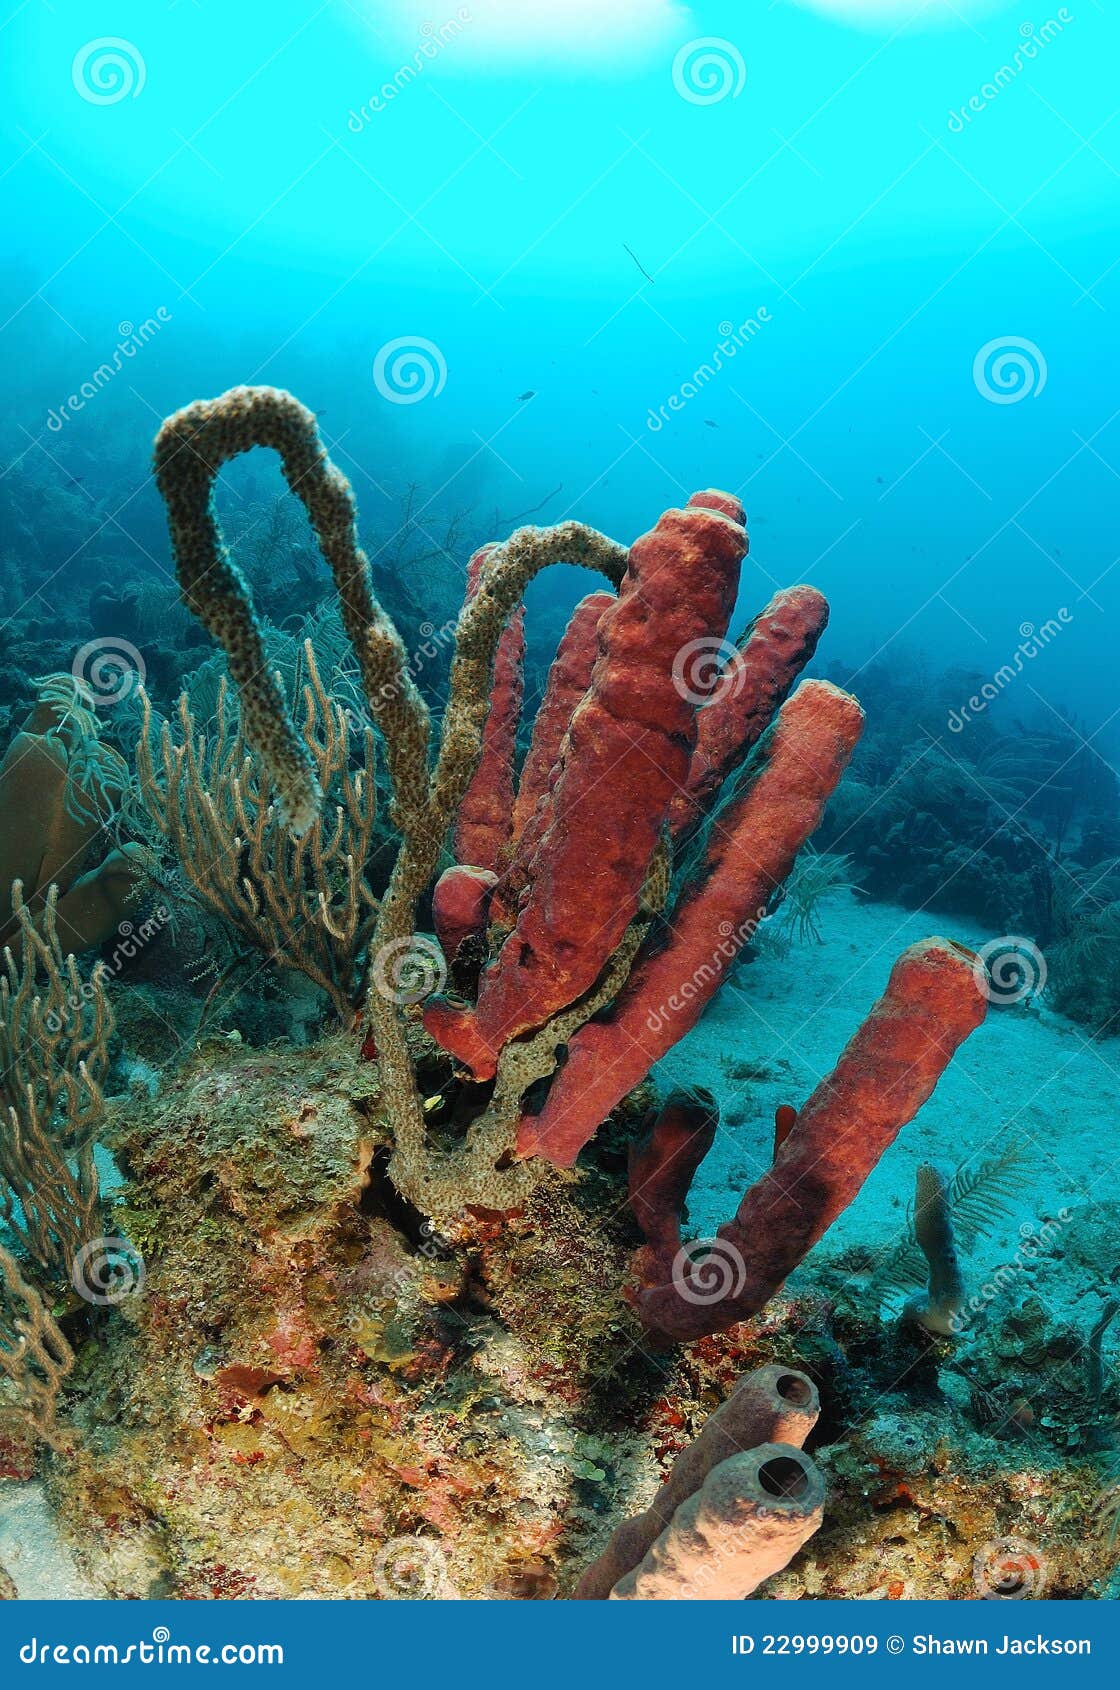 tube sponges in coral reef